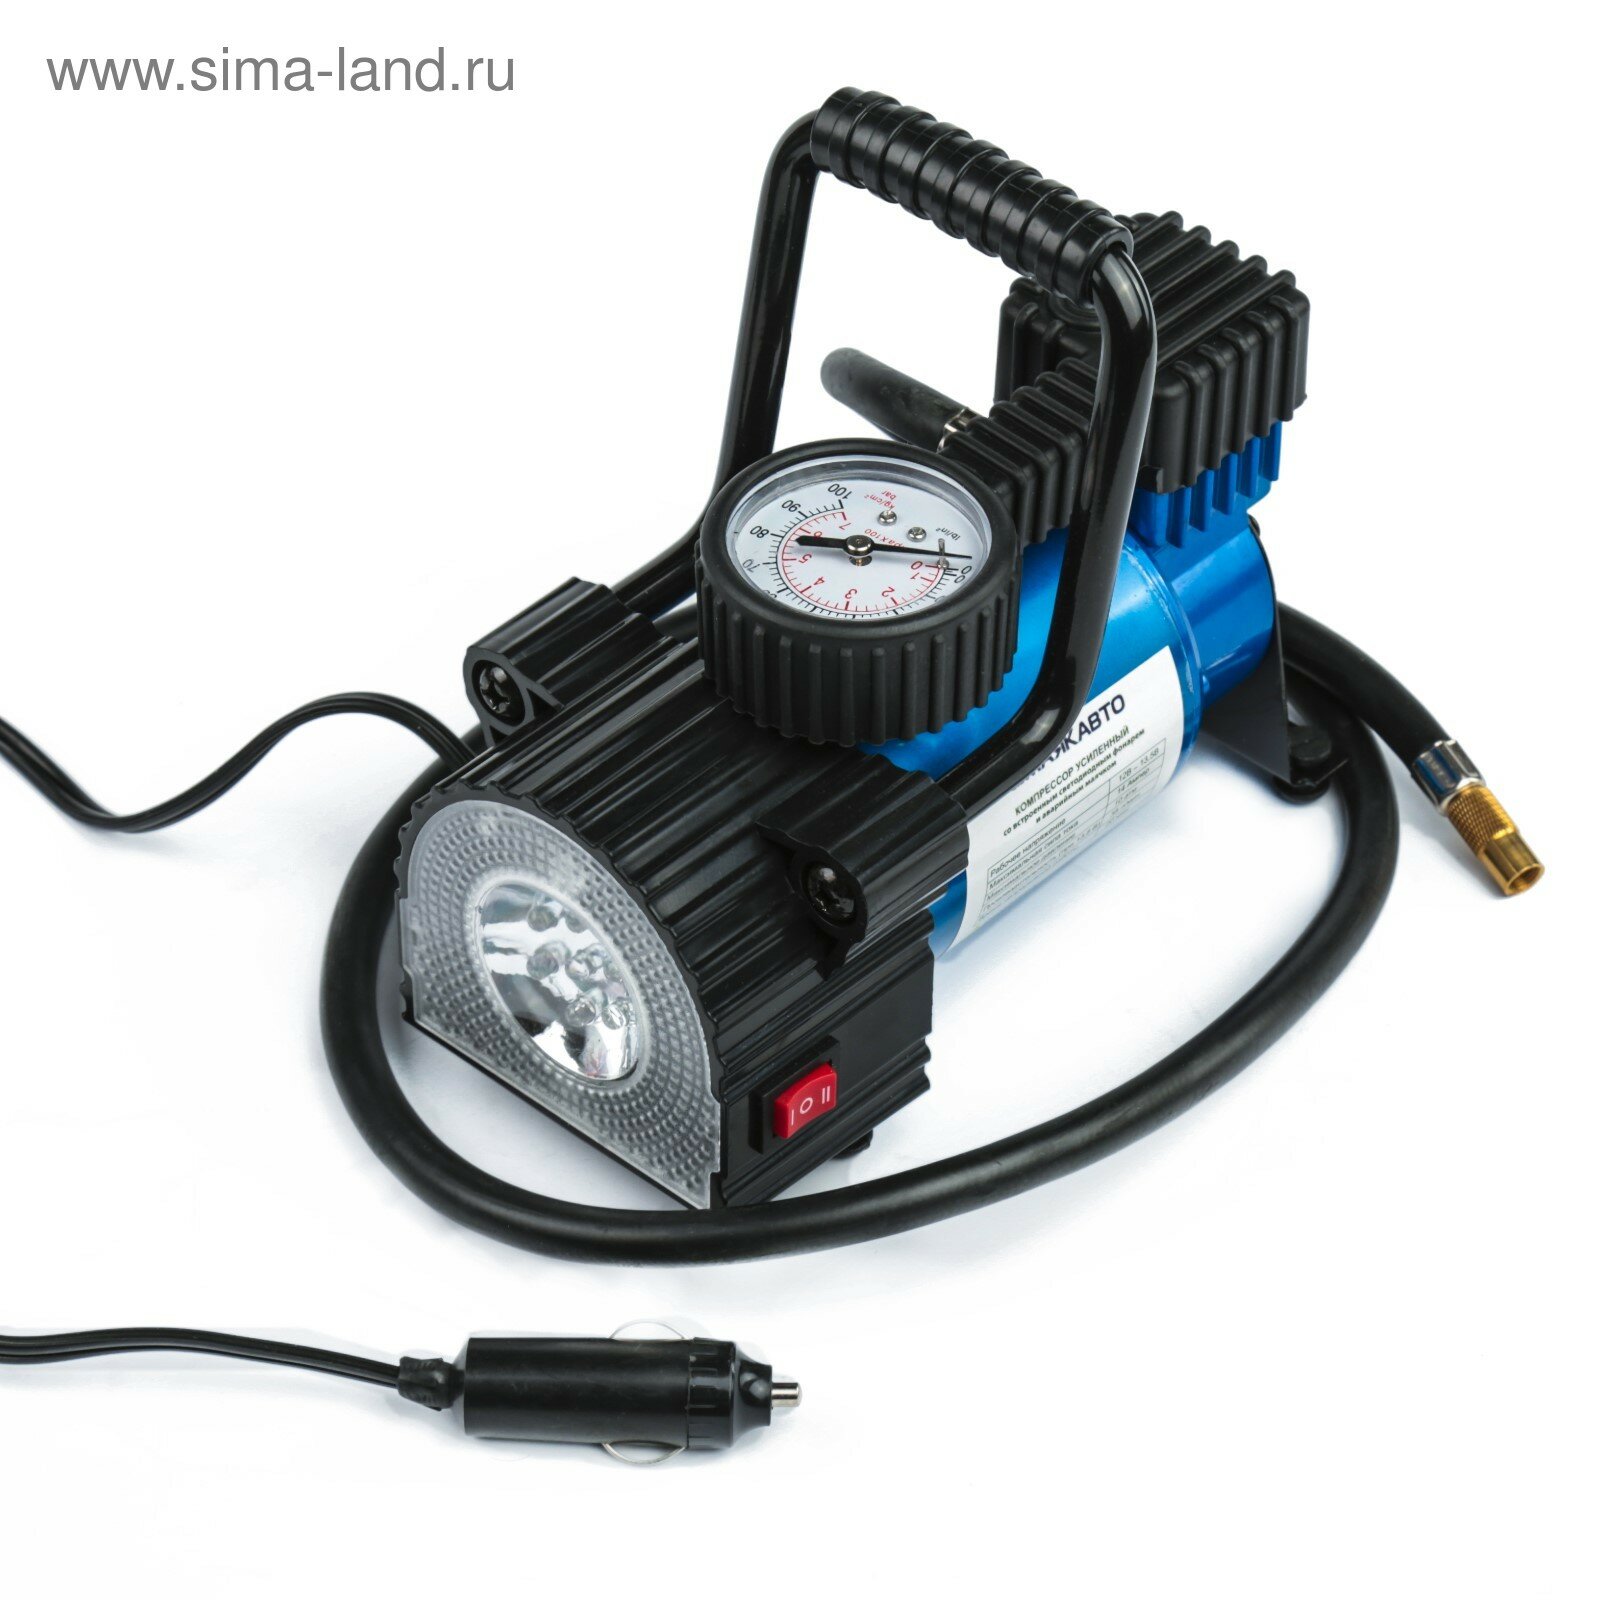 Компрессор автомобильный АС-587ма с LED фонарем 14А 35 л/мин 12 В 10 Атм/150 PSI